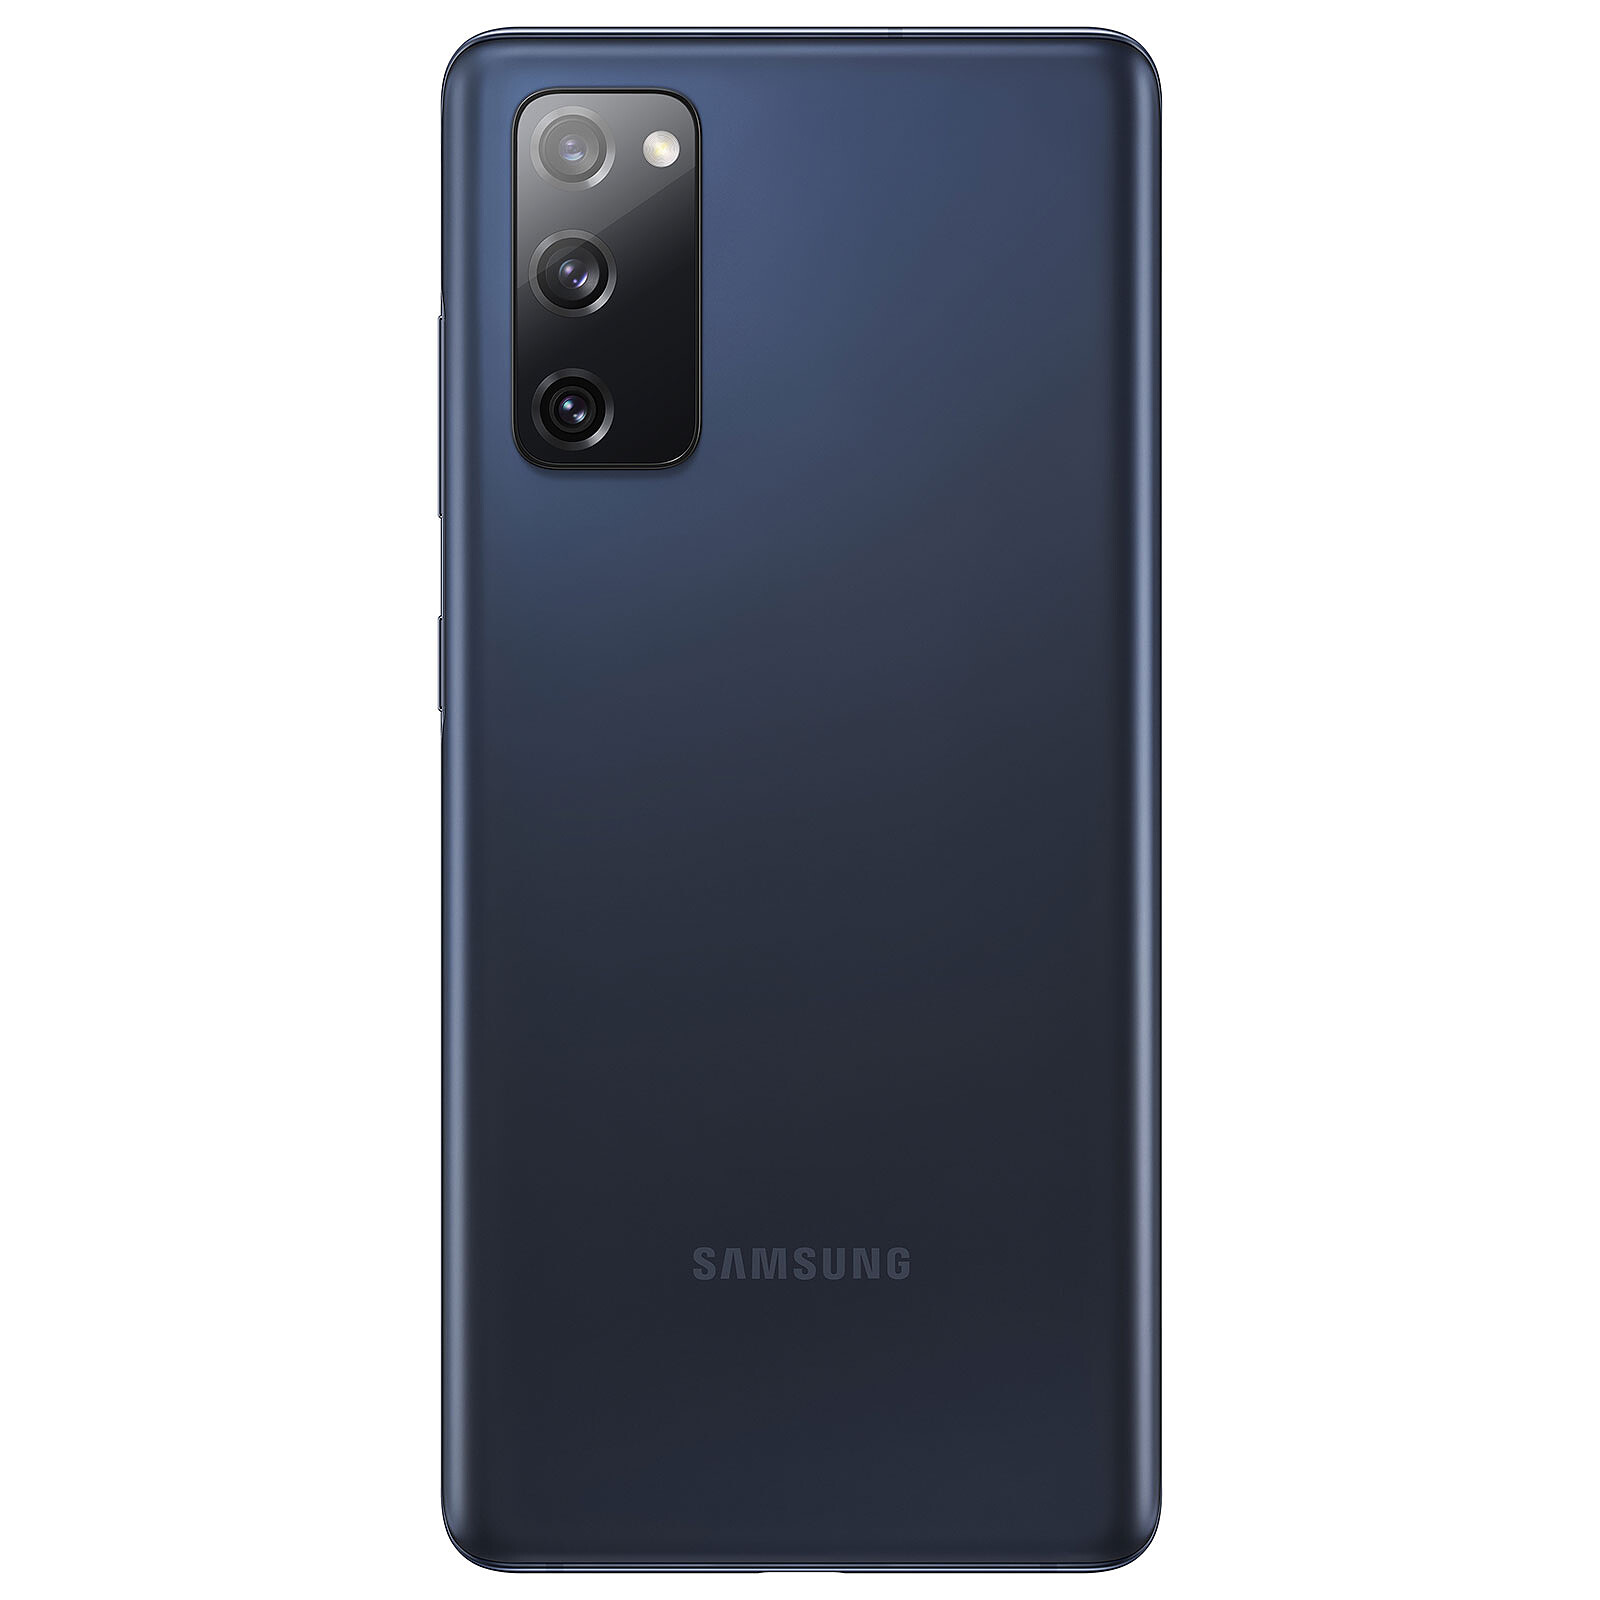 Samsung Galaxy S20 FE, ficha técnica de características y precio